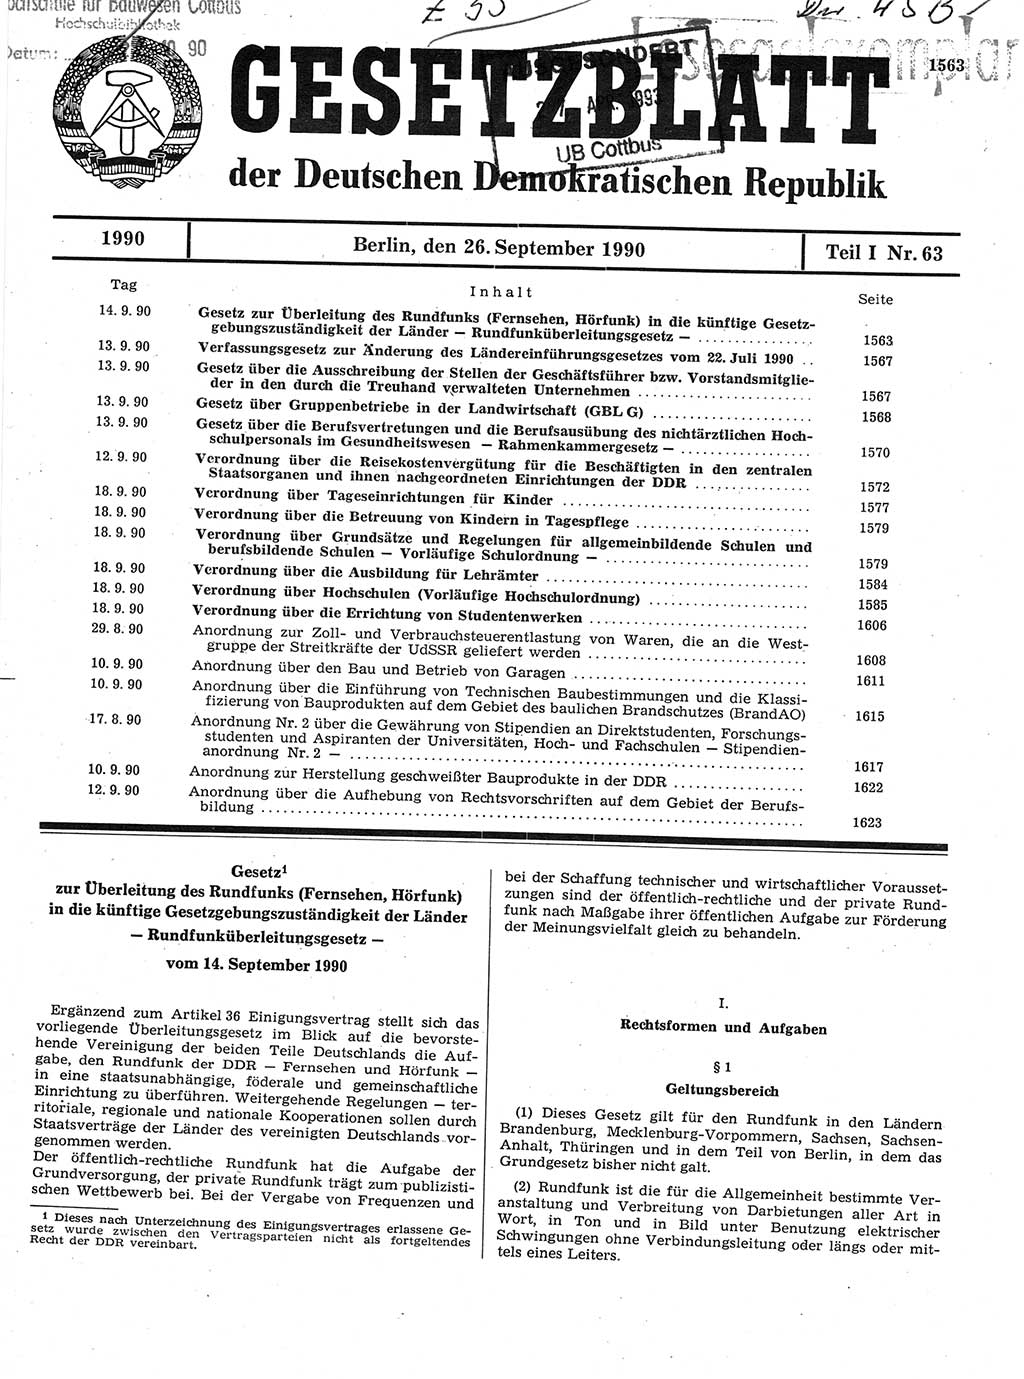 Gesetzblatt (GBl.) der Deutschen Demokratischen Republik (DDR) Teil Ⅰ 1990, Seite 1563 (GBl. DDR Ⅰ 1990, S. 1563)